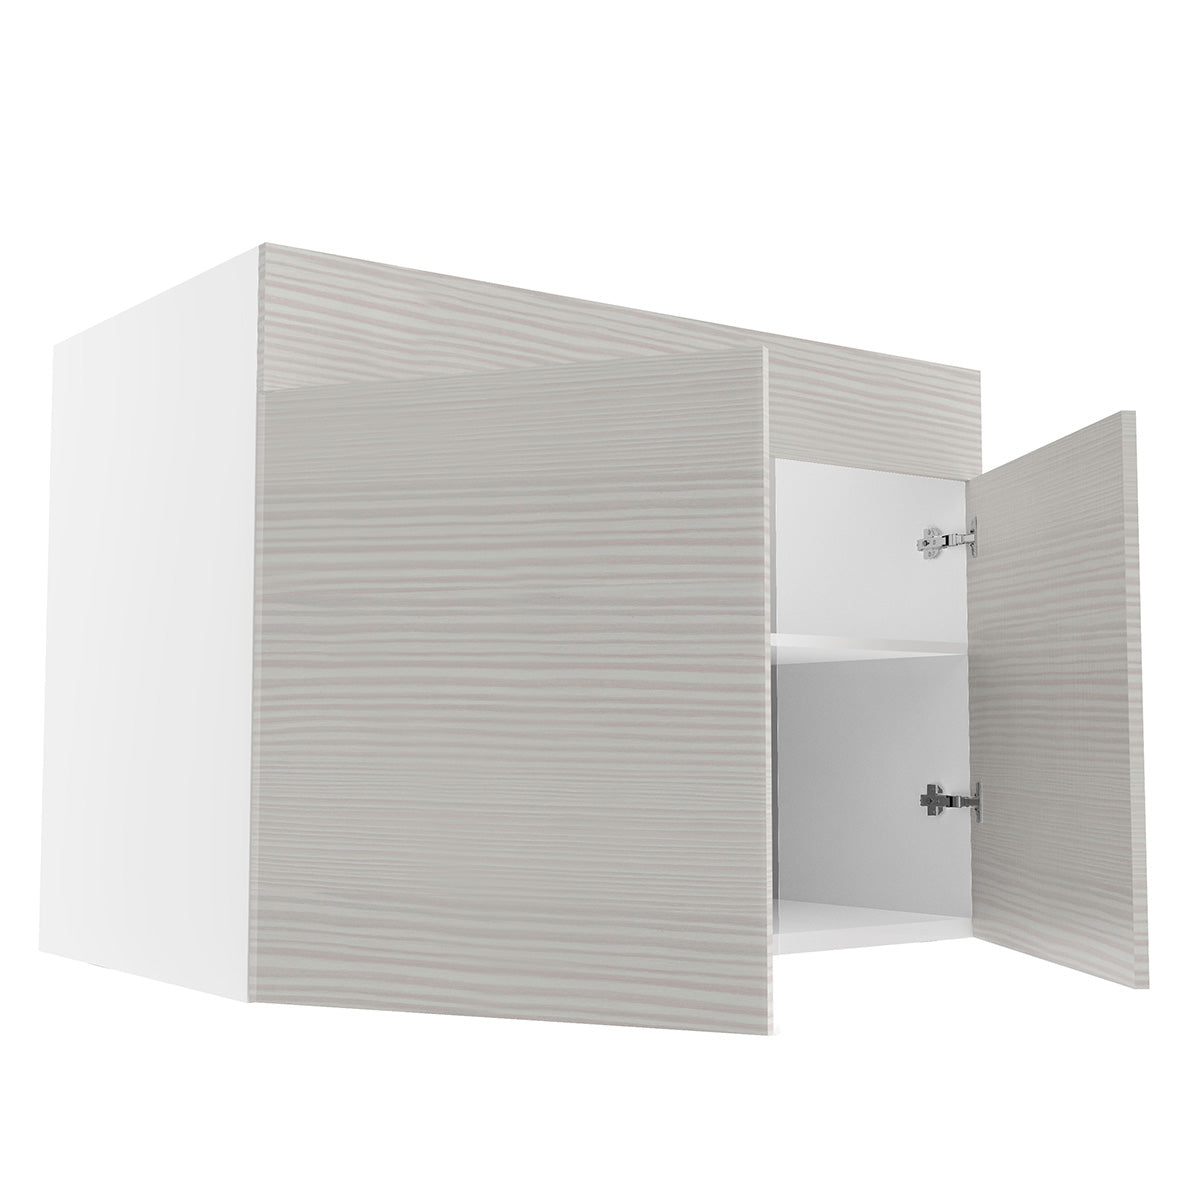 RTA - Pale Pine - Sink Base Cabinets | 42"W x 30"H x 23.8"D